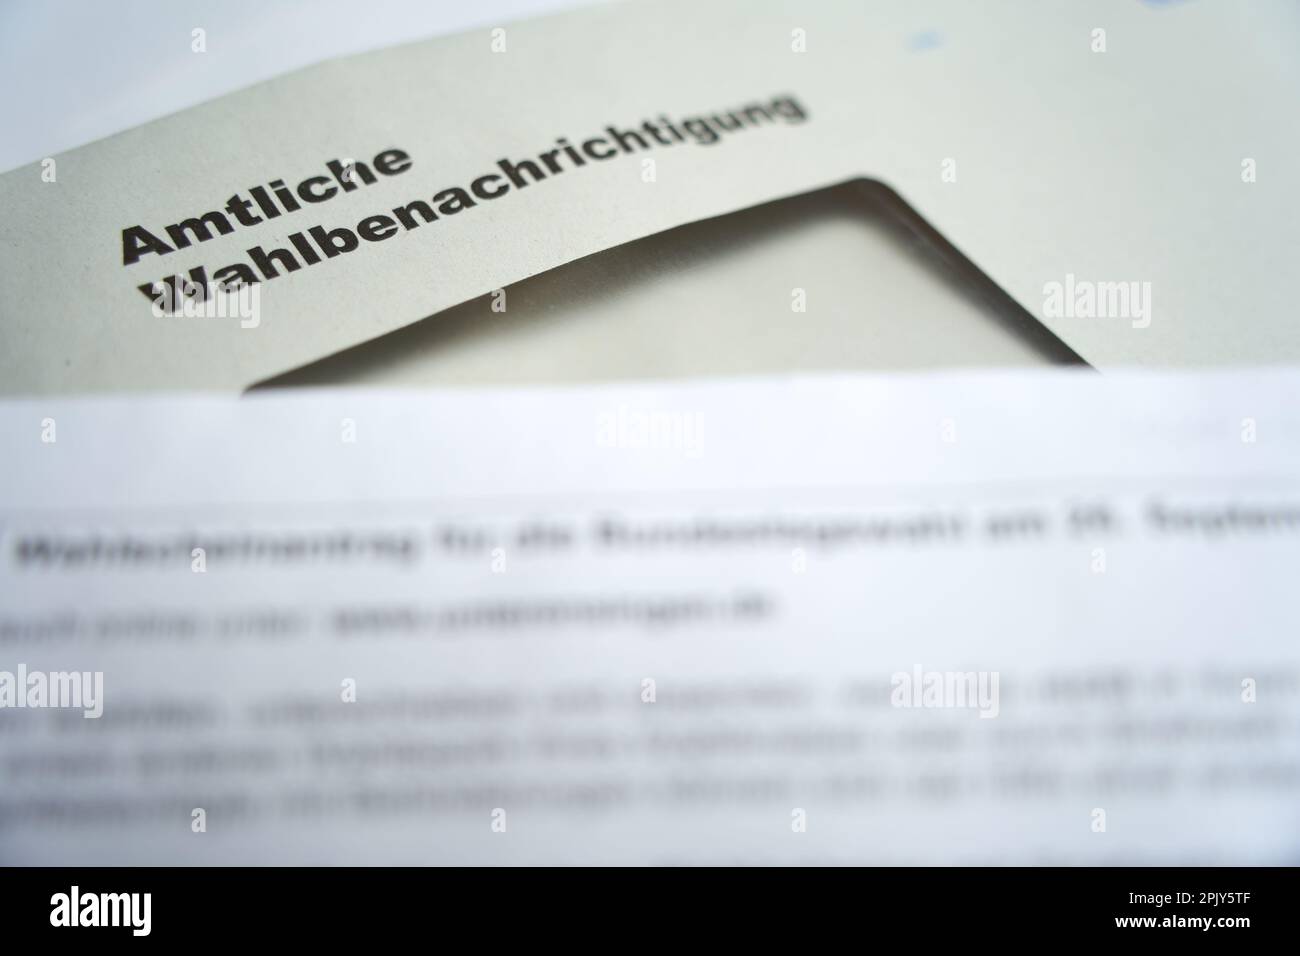 Stuttgart, Allemagne - 28 août 2021: Notification officielle des élections (Wahlbenachrichtigung Bundestag) pour l'élection fédérale en allemagne. Ouvert Banque D'Images